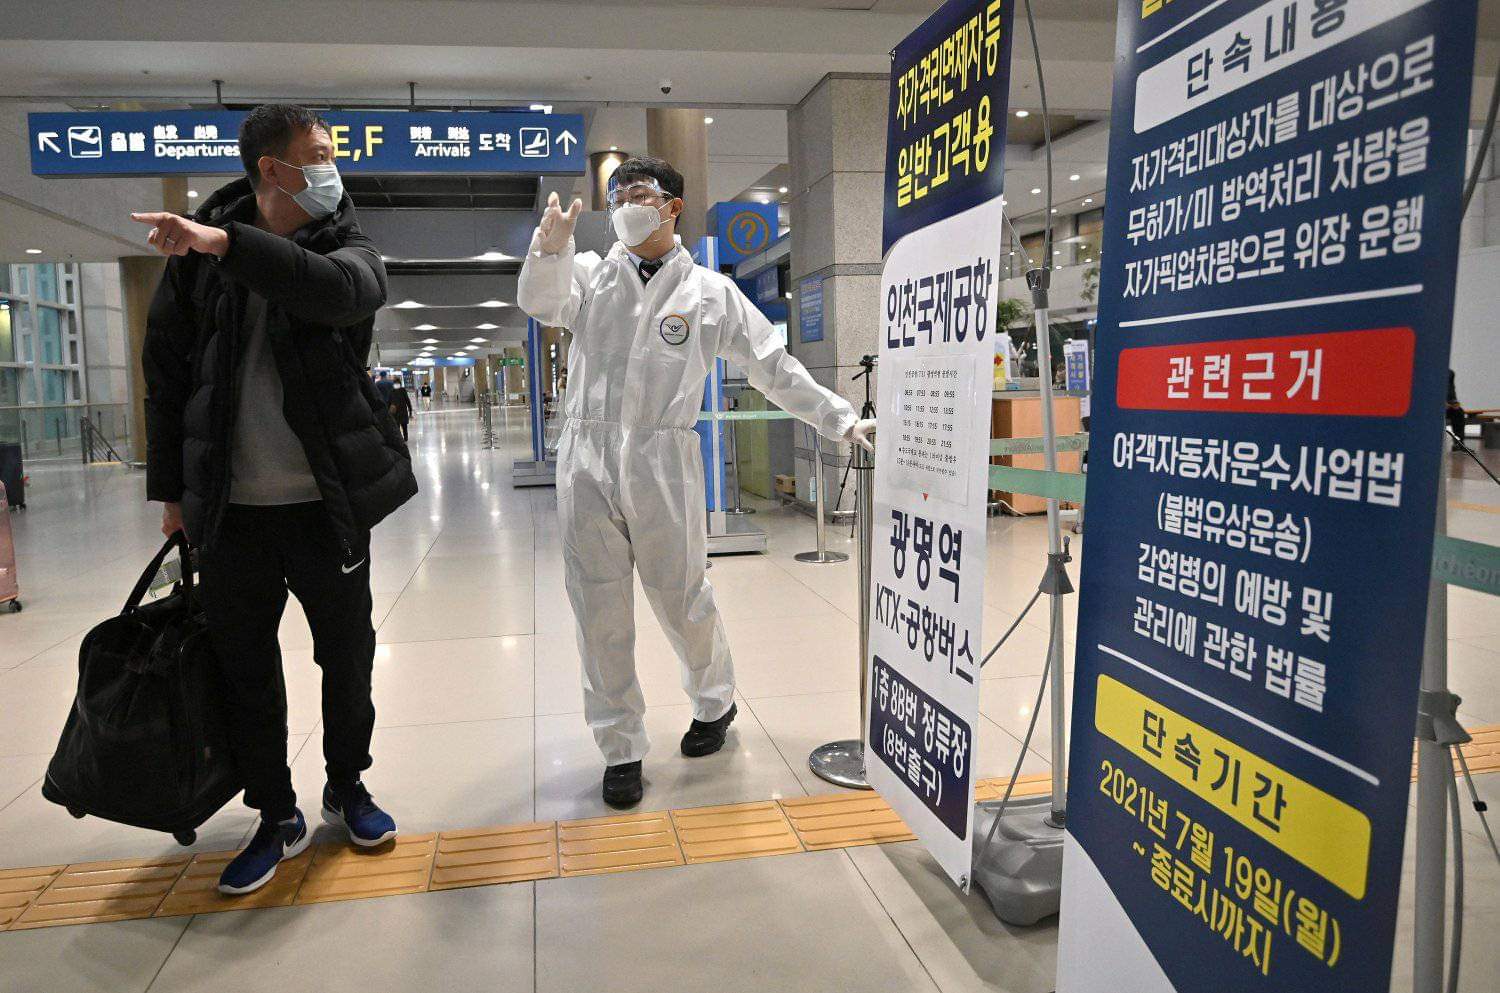 कोरियाले कोरोनाको पुरामात्रा खोप लगाएका विदेशी नागरिकलाई क्वारेन्टाईन छुटदिने तयारी